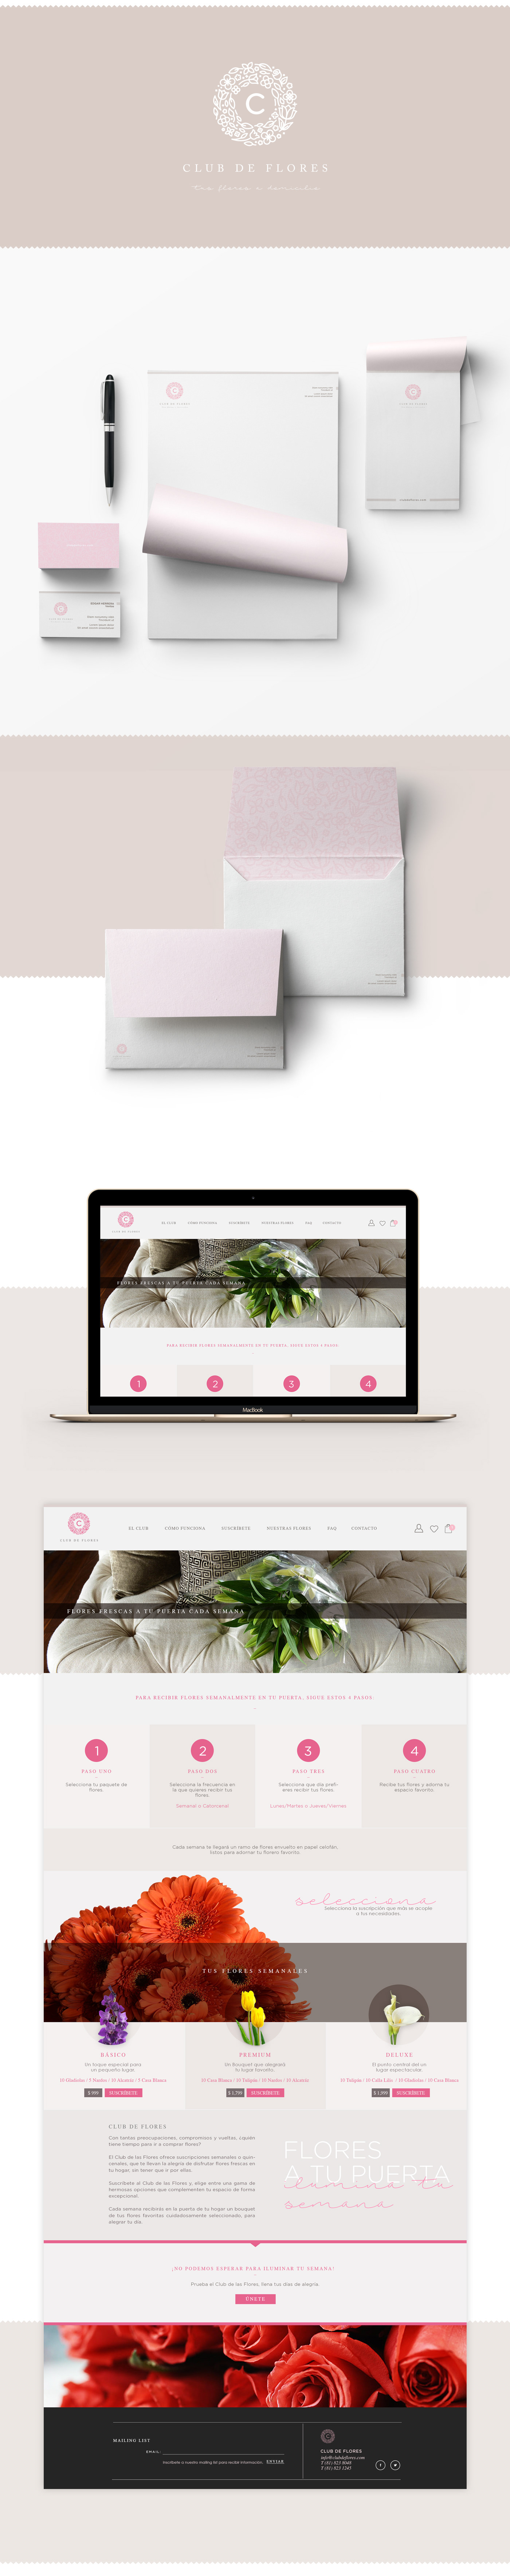 Stationery Flowers branding  diseño gráfico Identidad Corporativa desarrollo de marca Diseño web sitio web tienda online tienda en linea